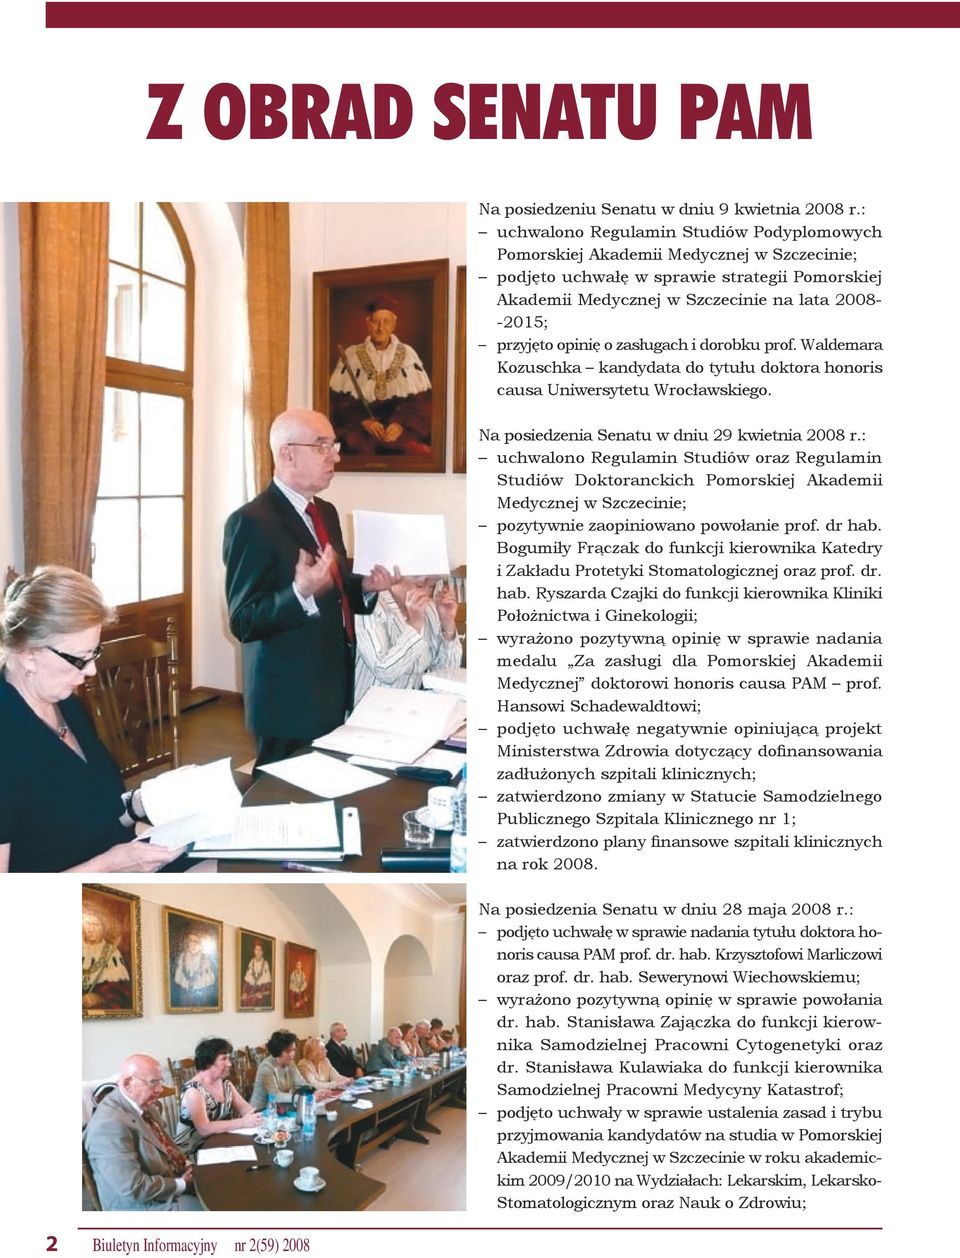 opinię o zasługach i dorobku prof. Waldemara Kozuschka kandydata do tytułu doktora honoris causa Uniwersytetu Wrocławskiego. Na posiedzenia Senatu w dniu 29 kwietnia 2008 r.